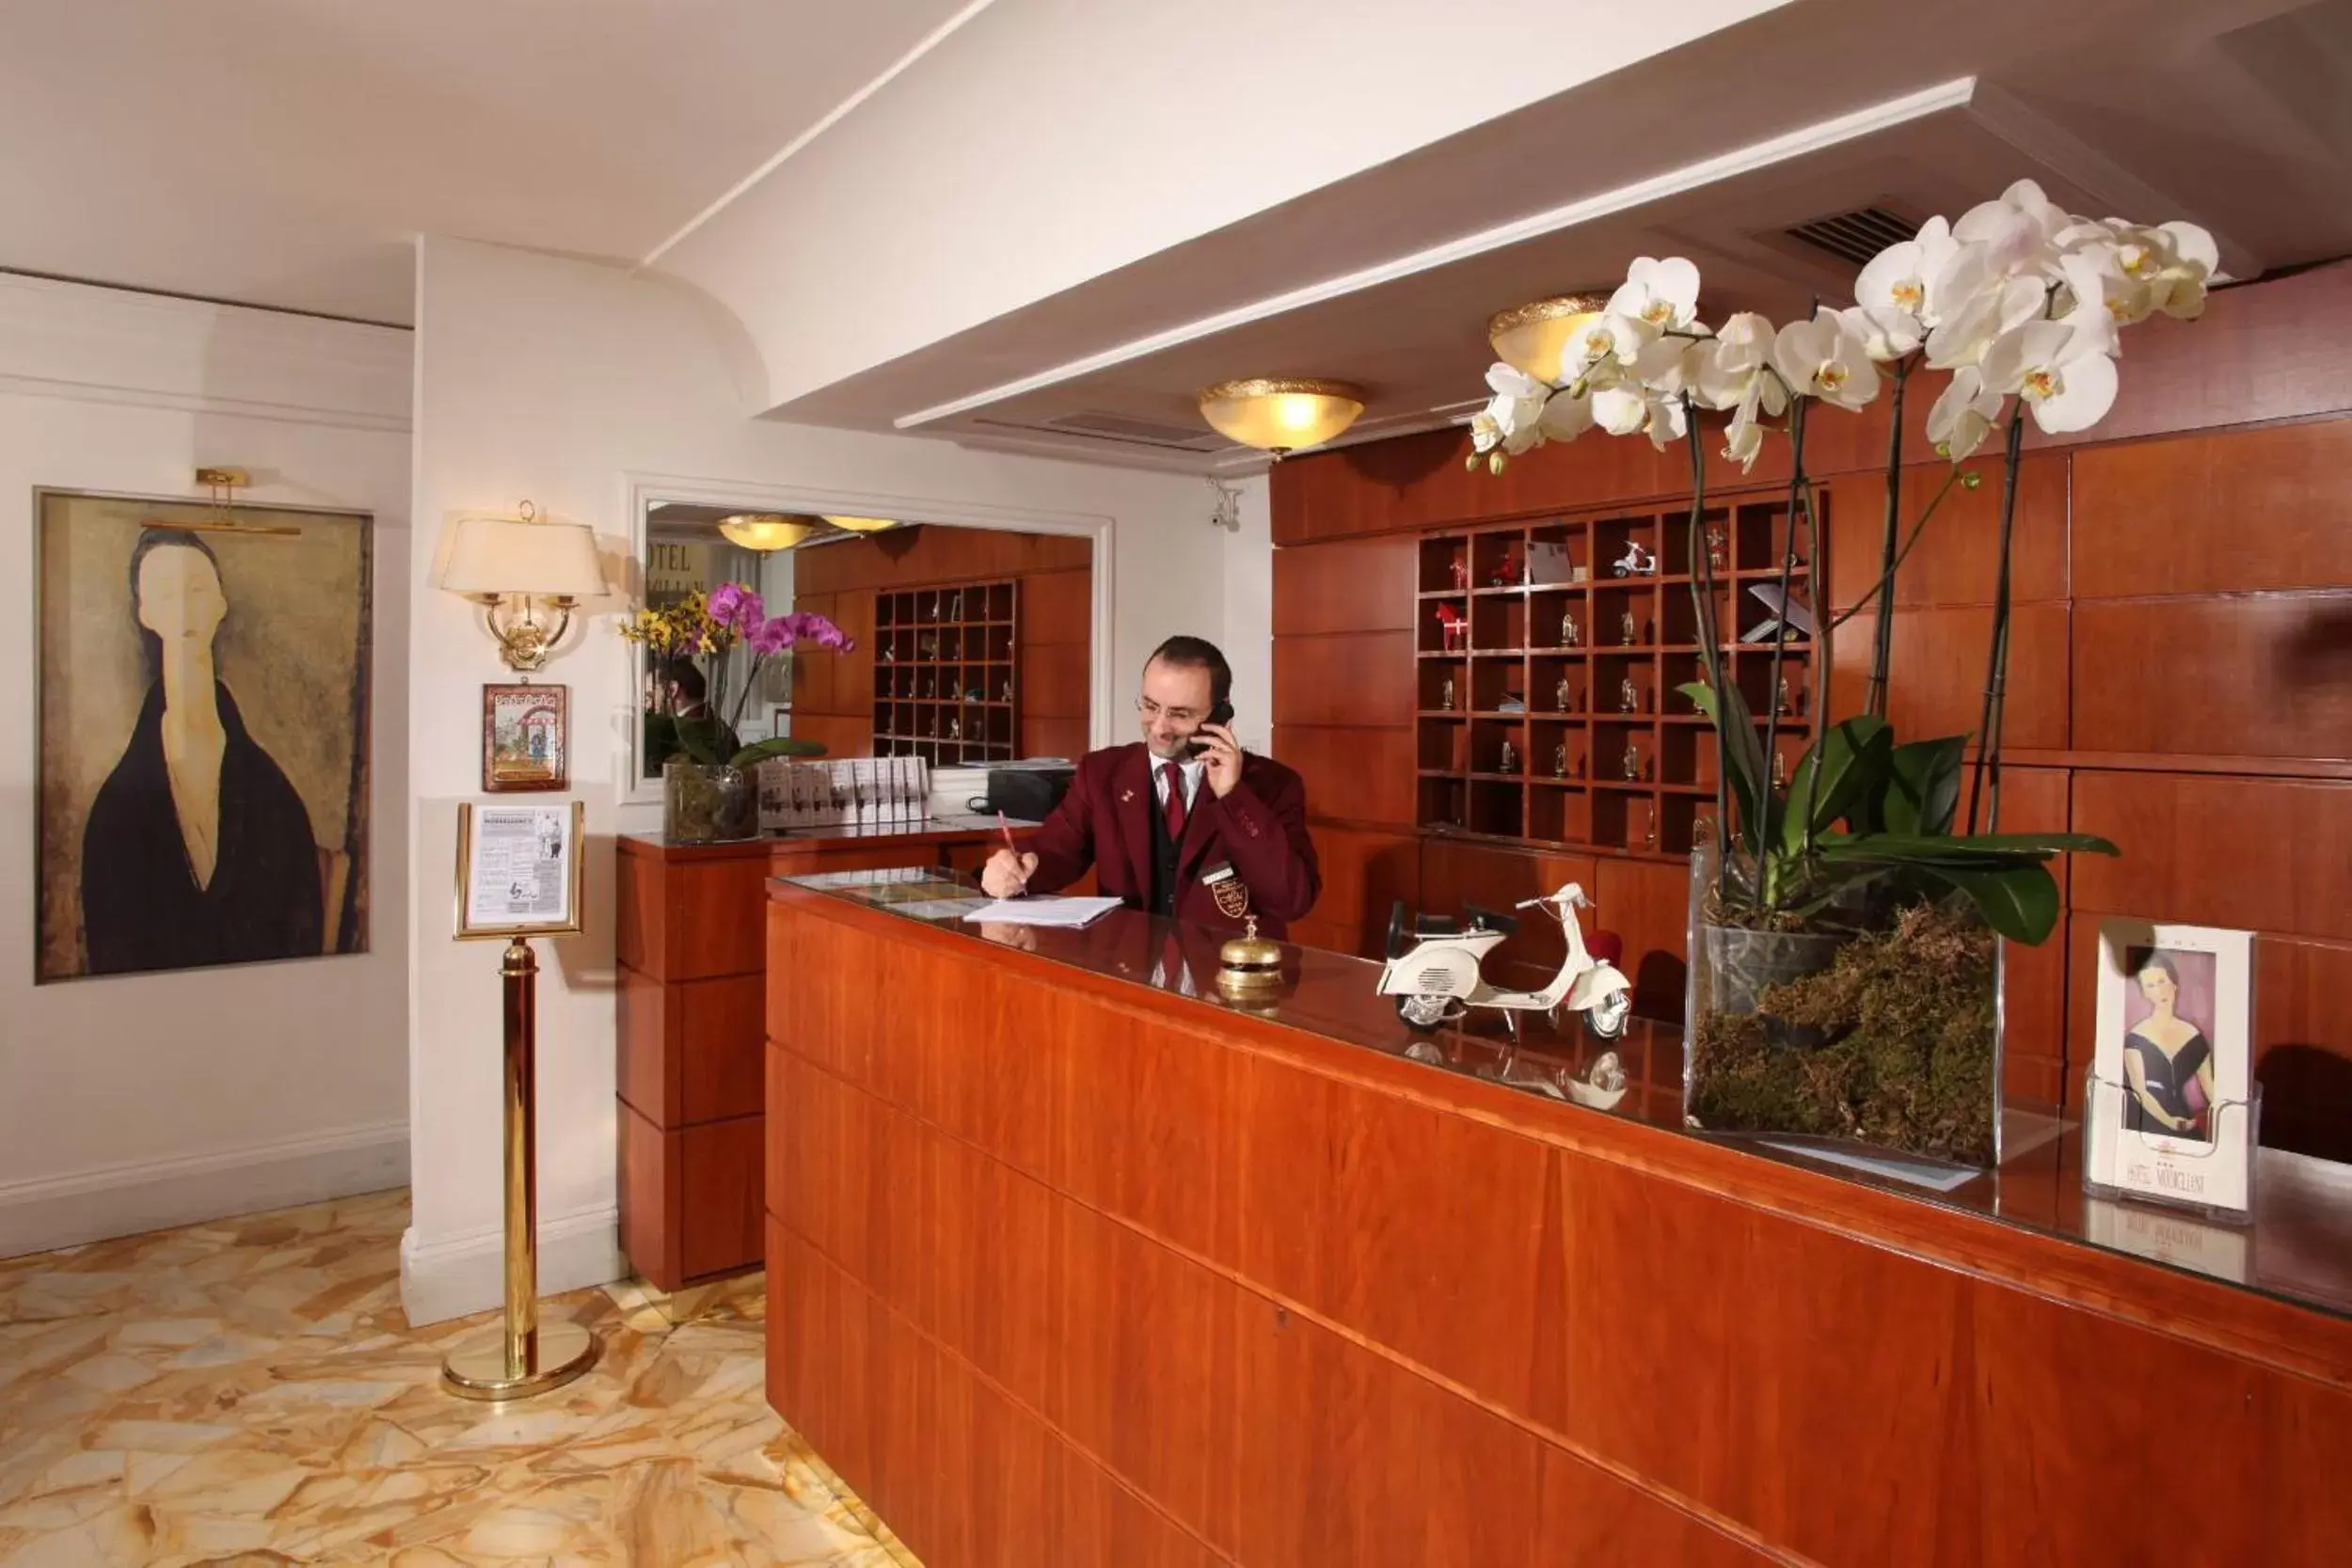 Lobby or reception, Lobby/Reception in Hotel Modigliani